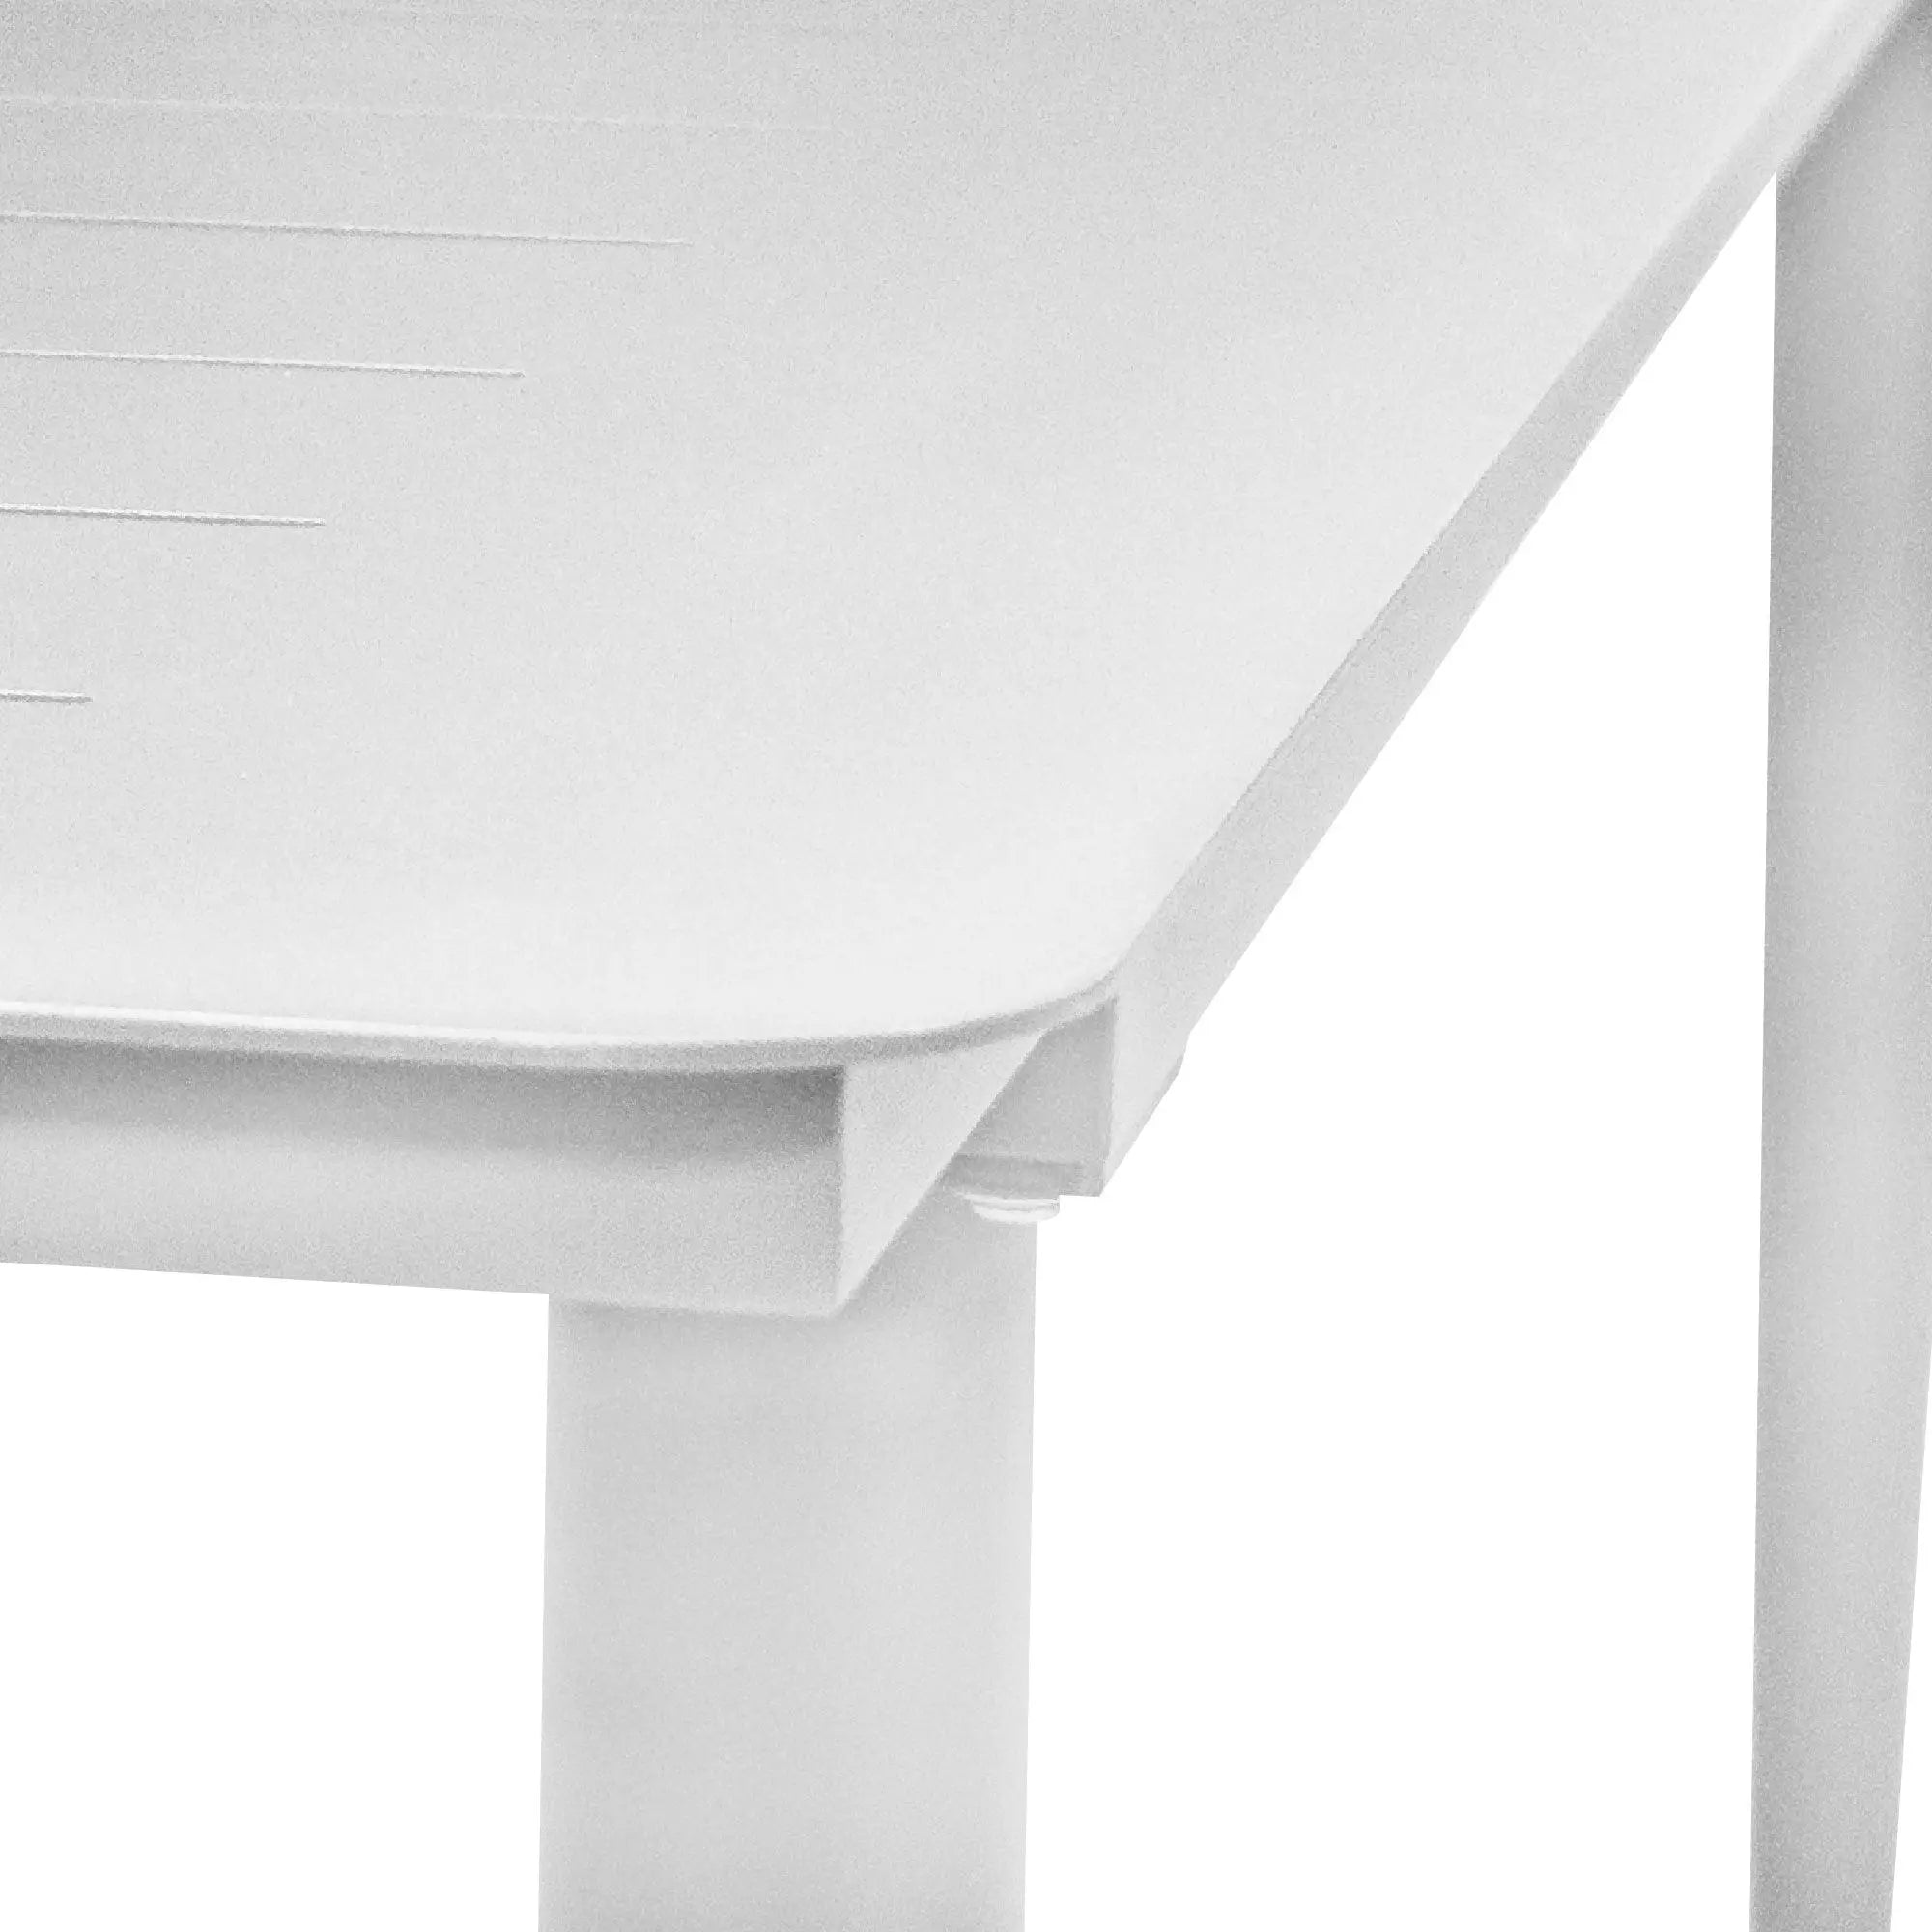 De qué material están hechas las mesas para exterior? — BLUMVER.